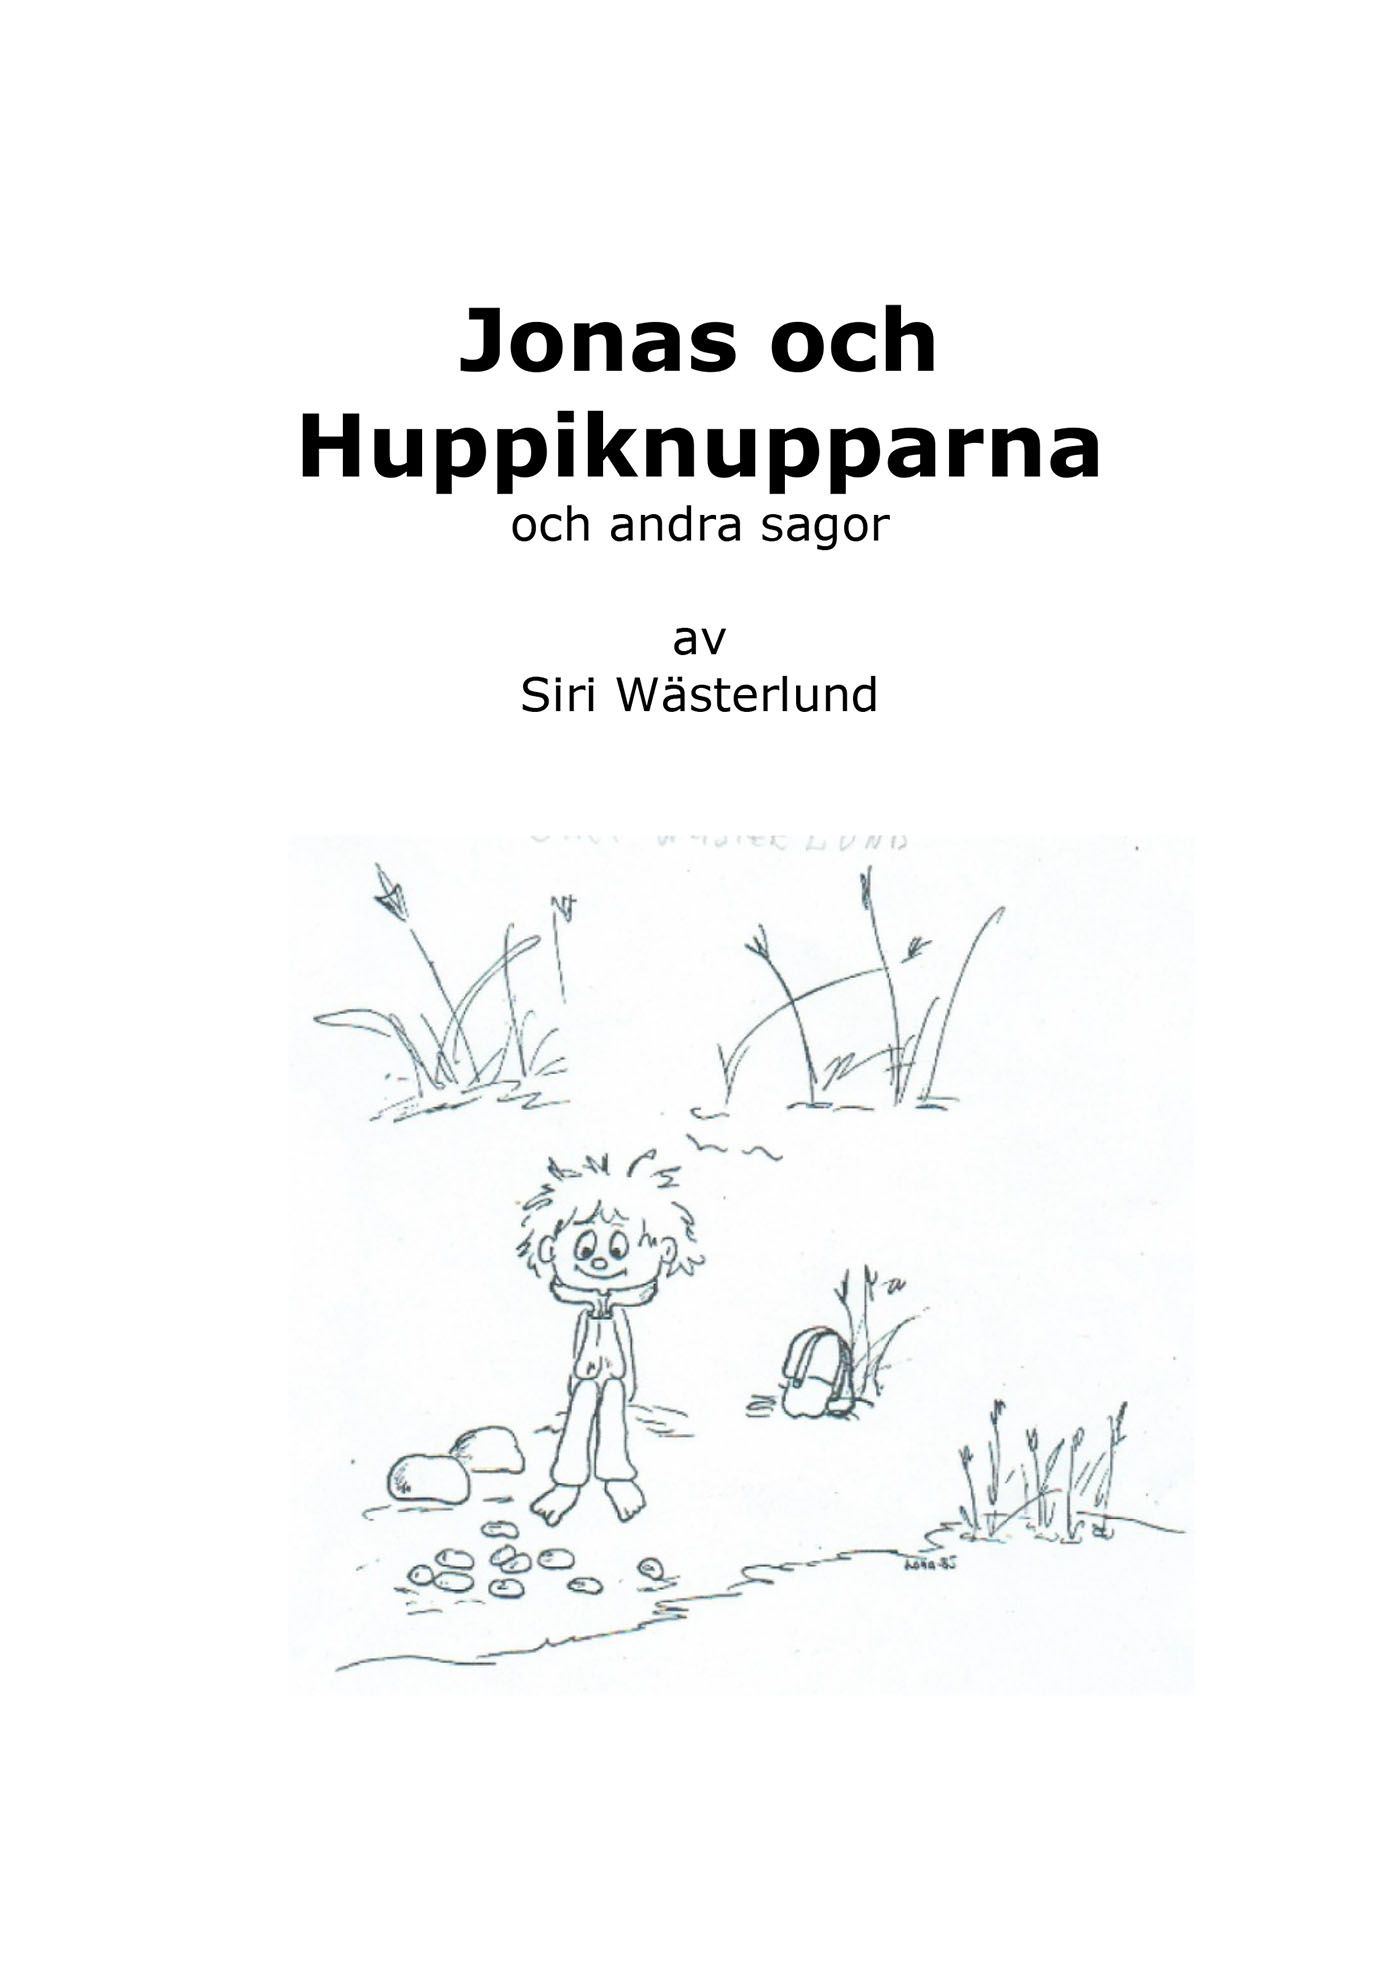 Jonas och Huppiknupparna och andra sagor, e-bok av Siri Wästerlund